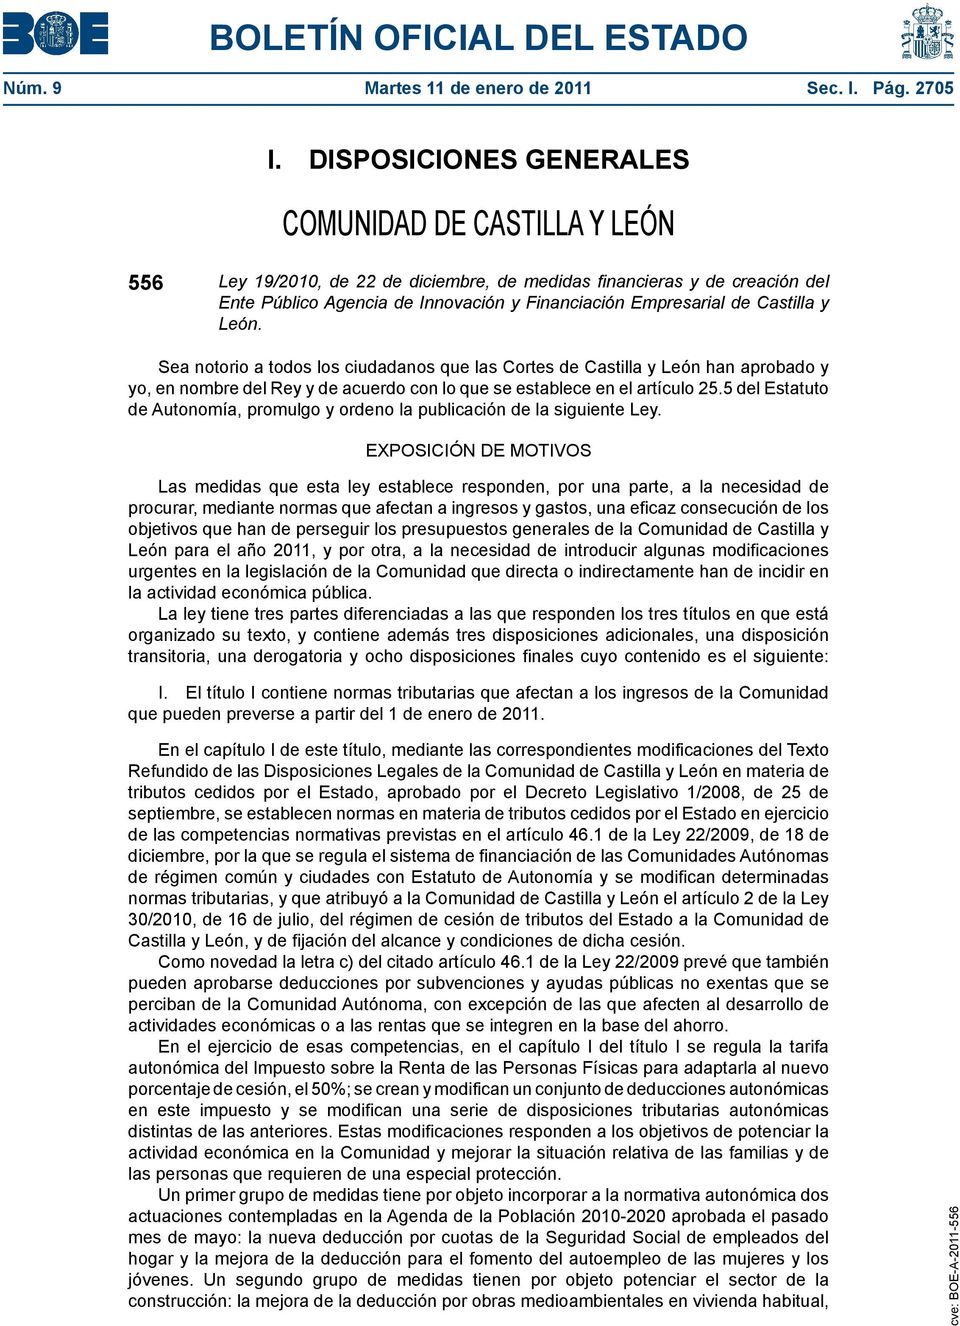 Castilla y León. Sea notorio a todos los ciudadanos que las Cortes de Castilla y León han aprobado y yo, en nombre del Rey y de acuerdo con lo que se establece en el artículo 25.